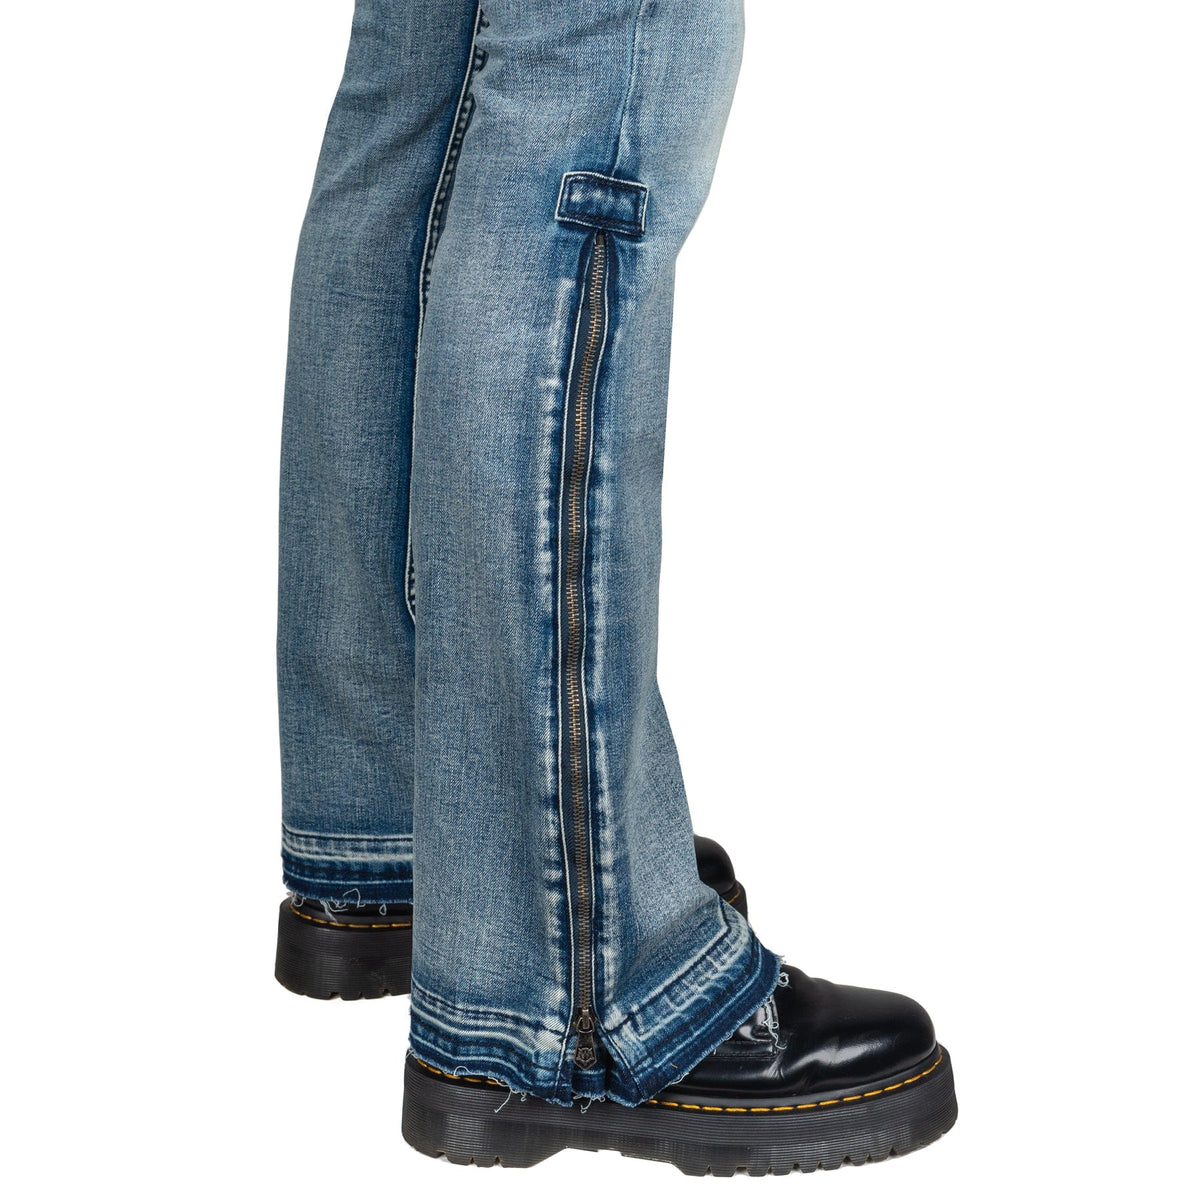 https://wornstar.com/cdn/shop/products/essentials-collection-hellraiser-side-zipper-pants-classic-blue-29007300788275_1200x.jpg?v=1687897330